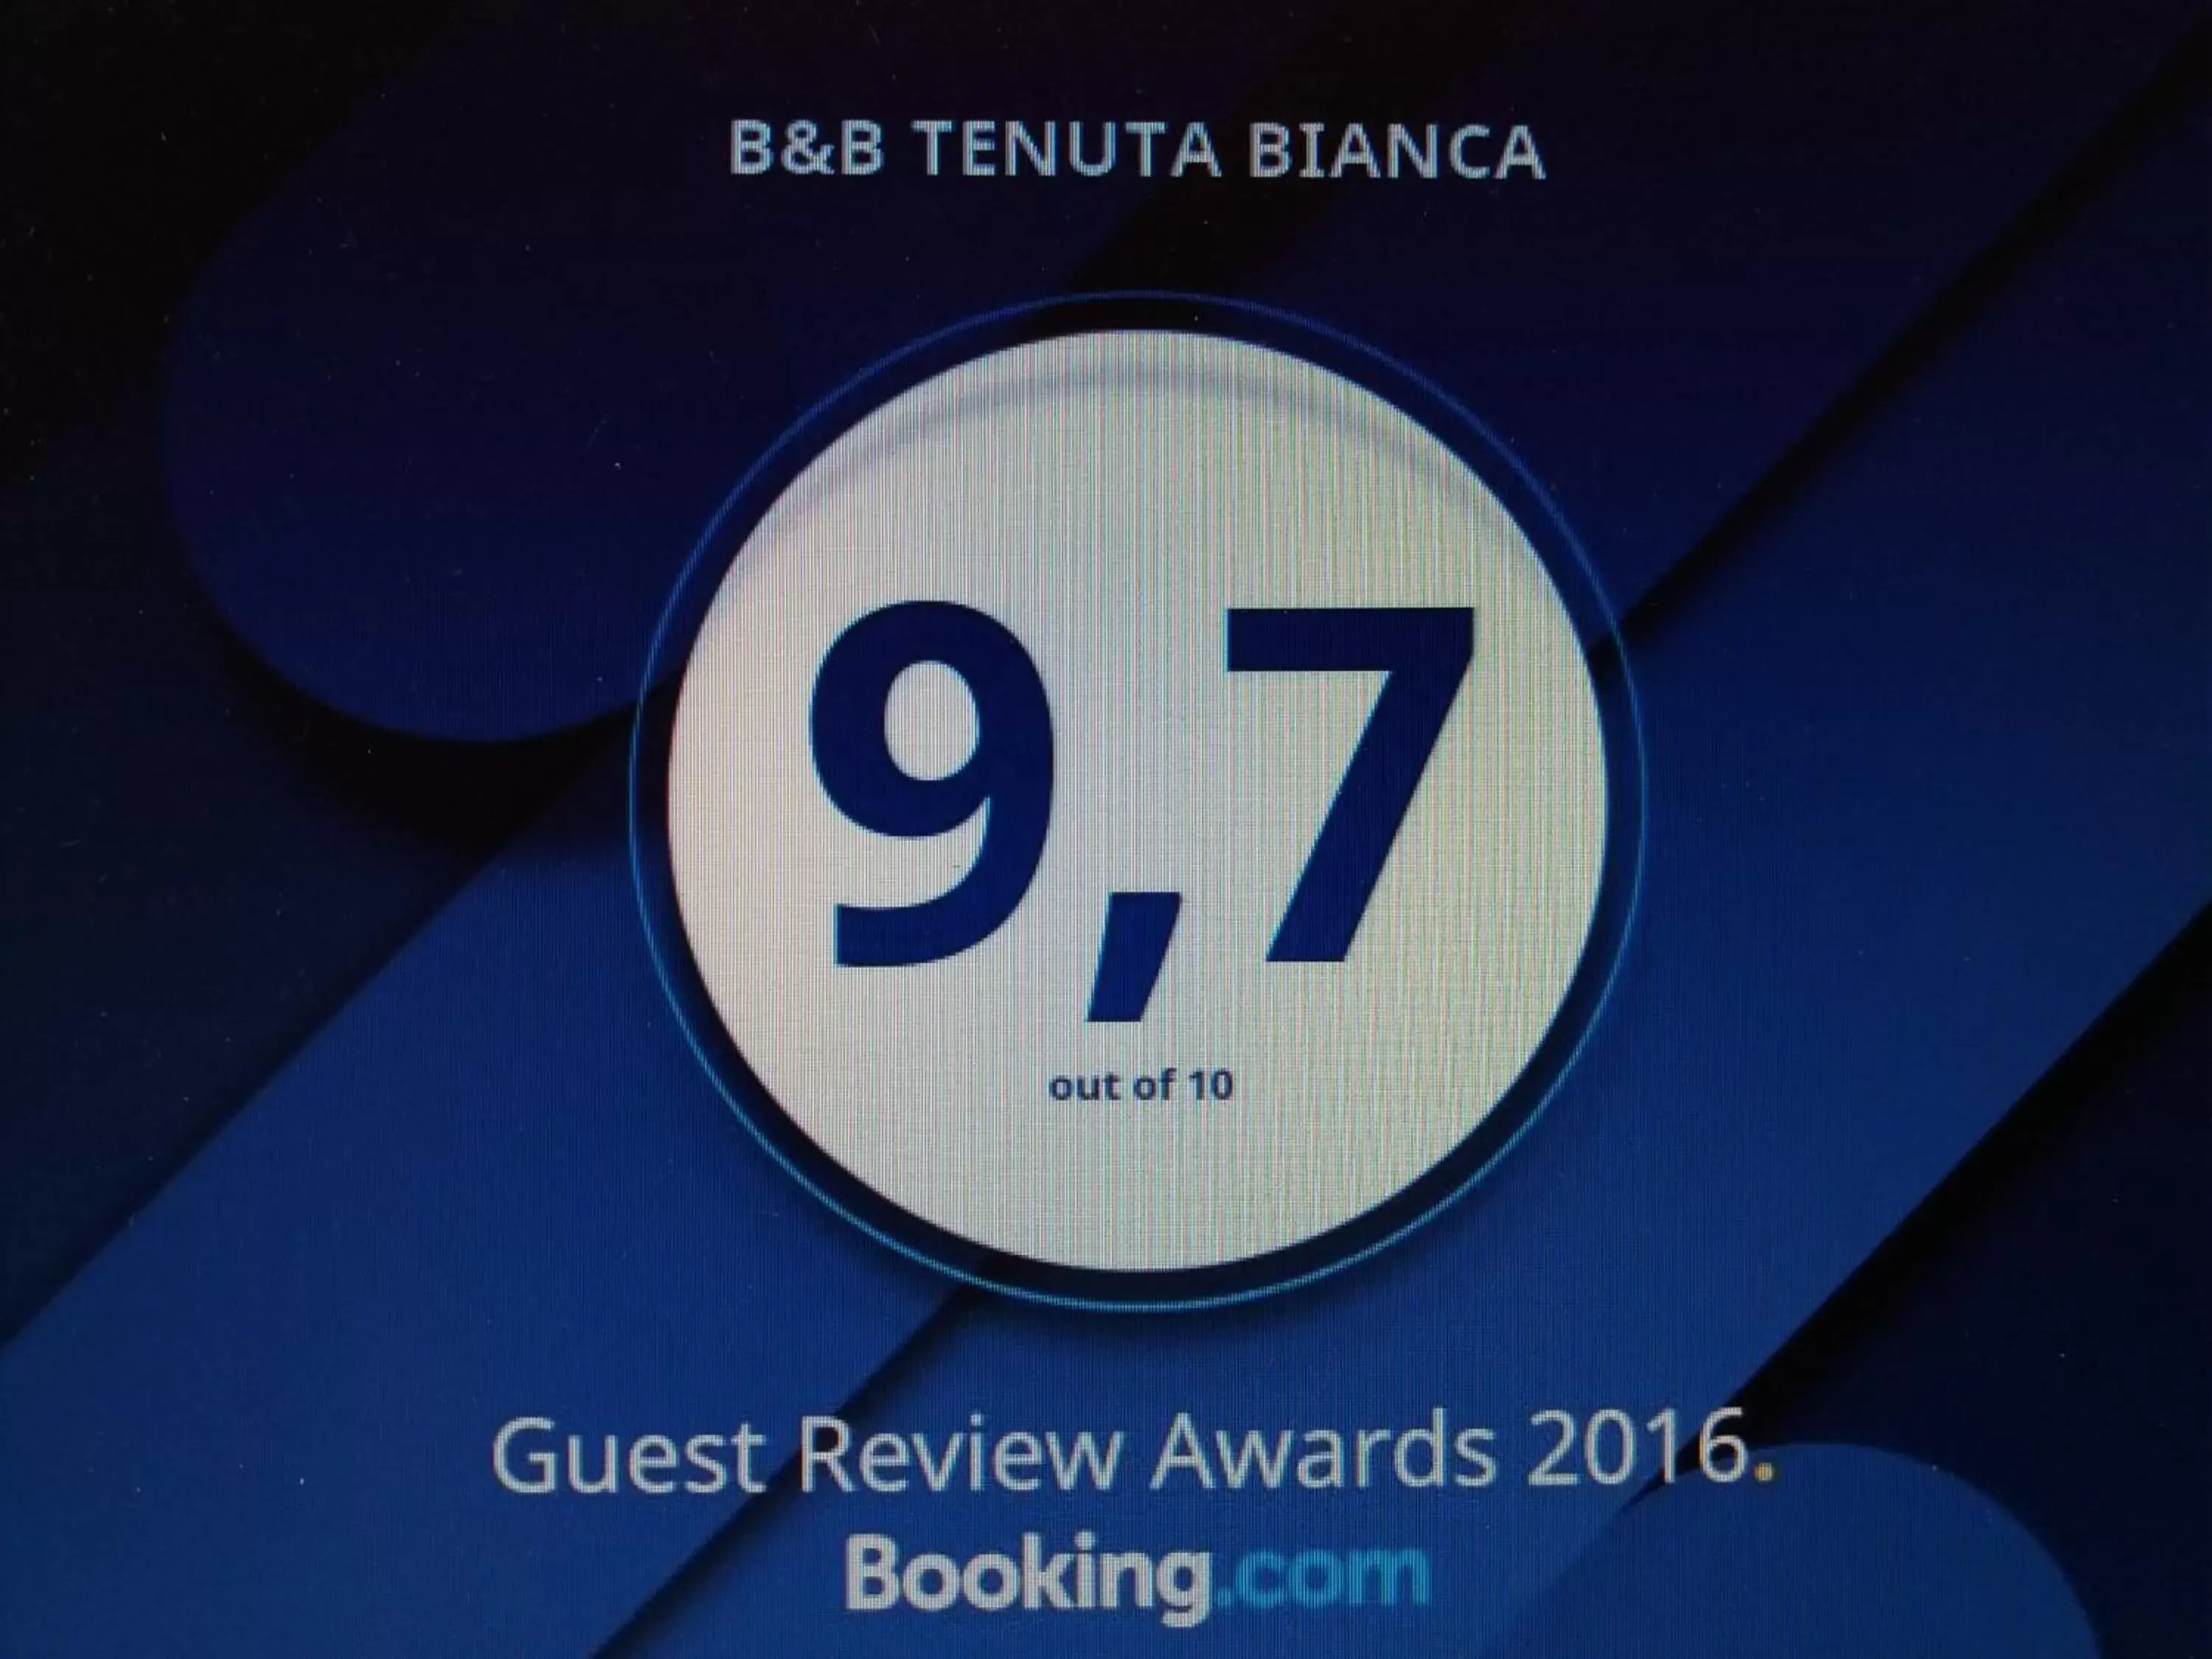 Certificate/Award in B&B TENUTA BIANCA